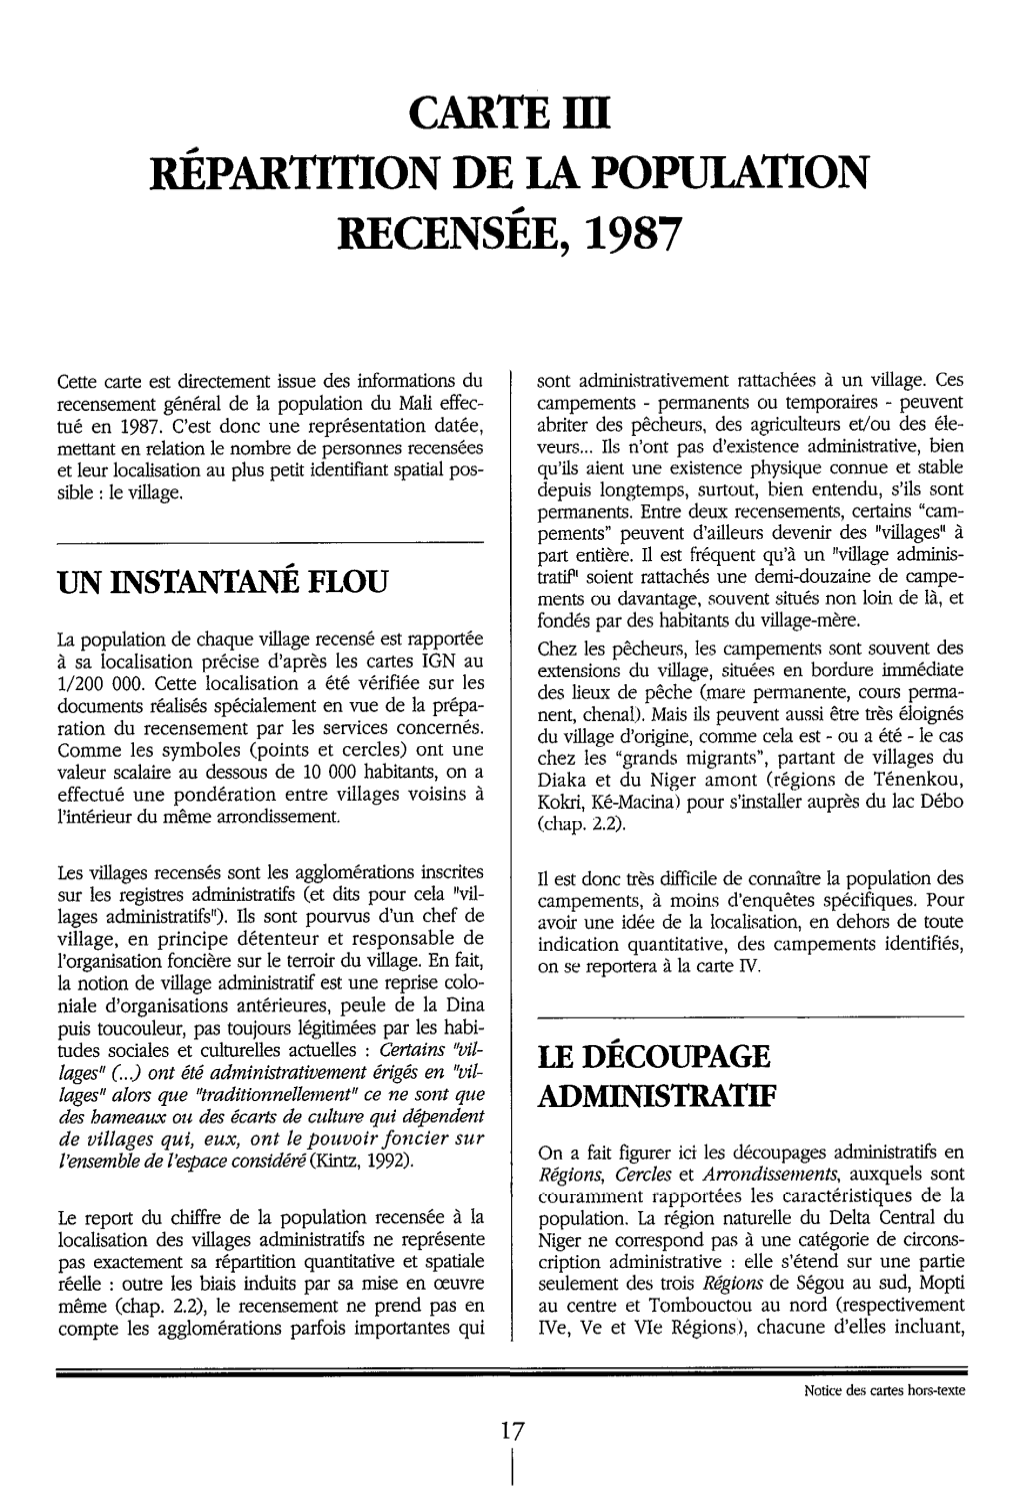 Carte 3 : Répartition De La Population Recensée, 1987